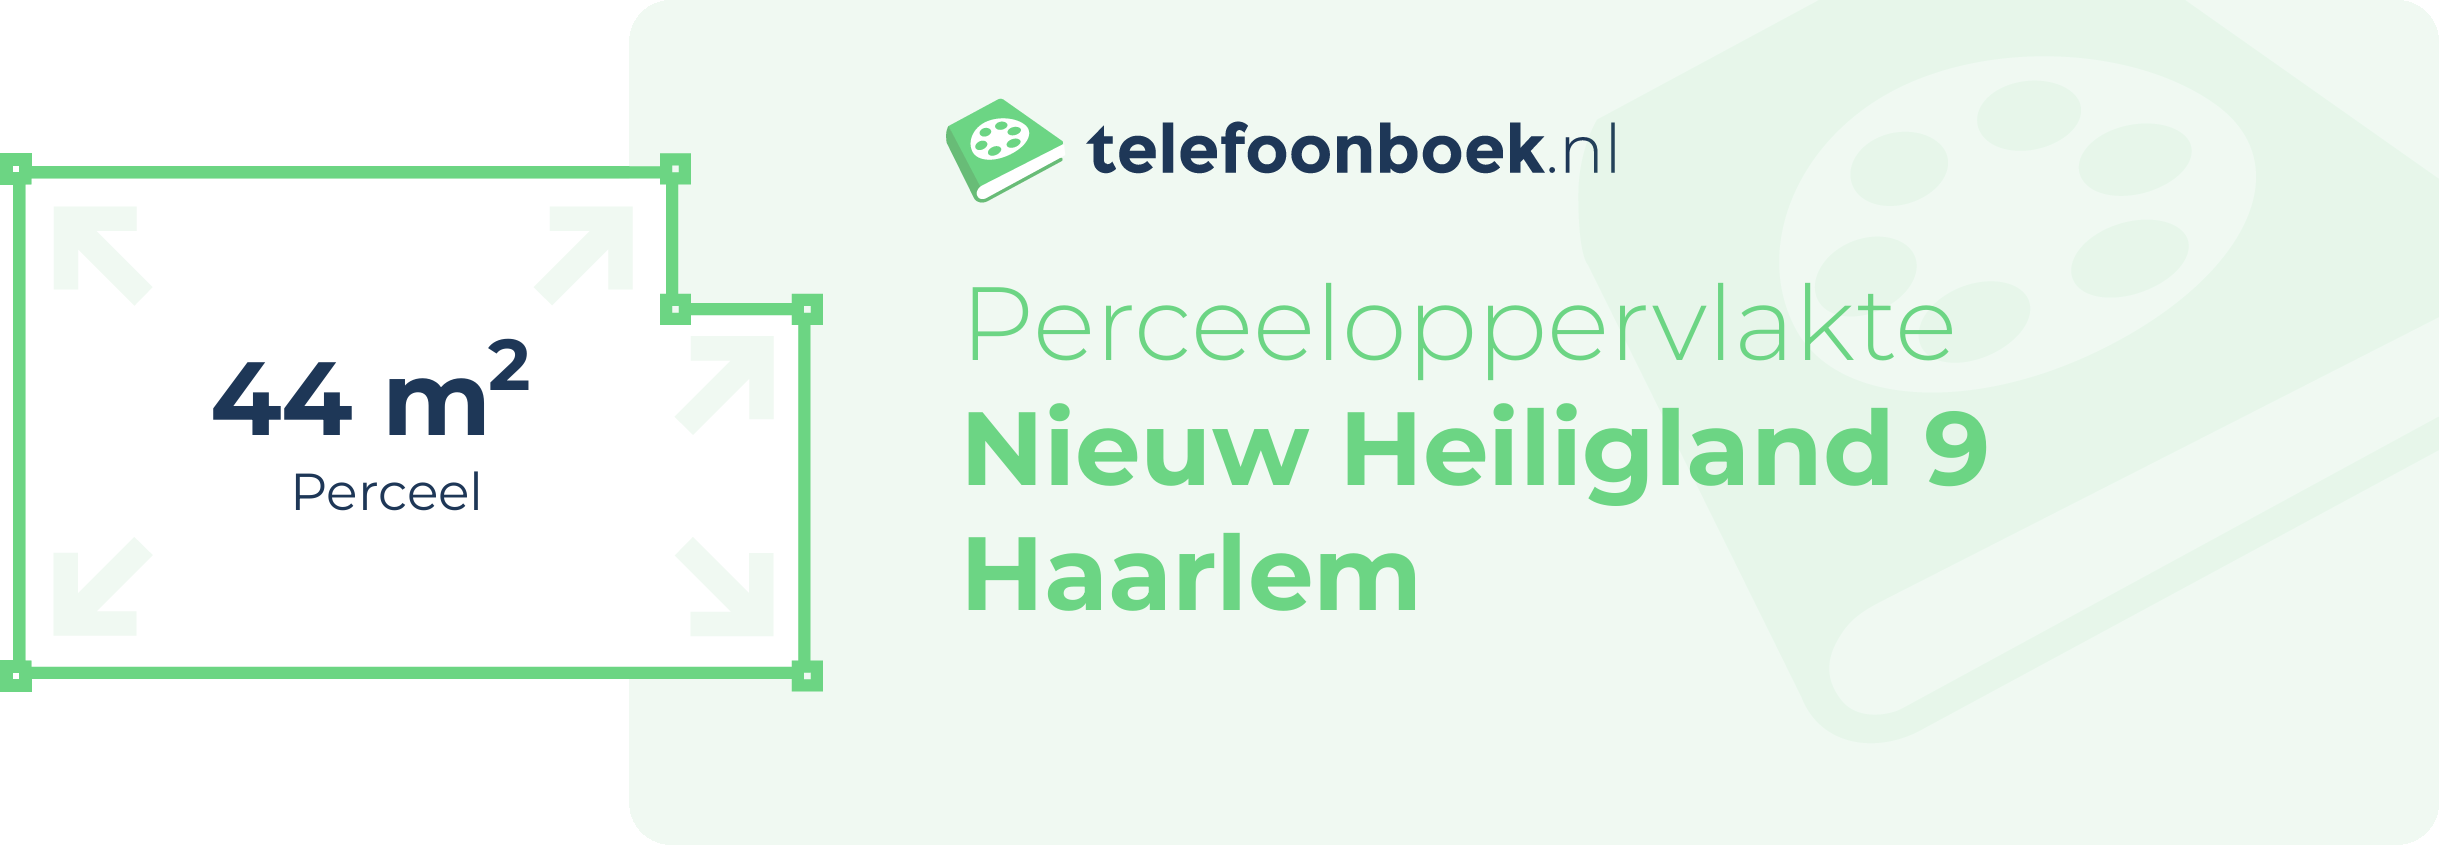 Perceeloppervlakte Nieuw Heiligland 9 Haarlem